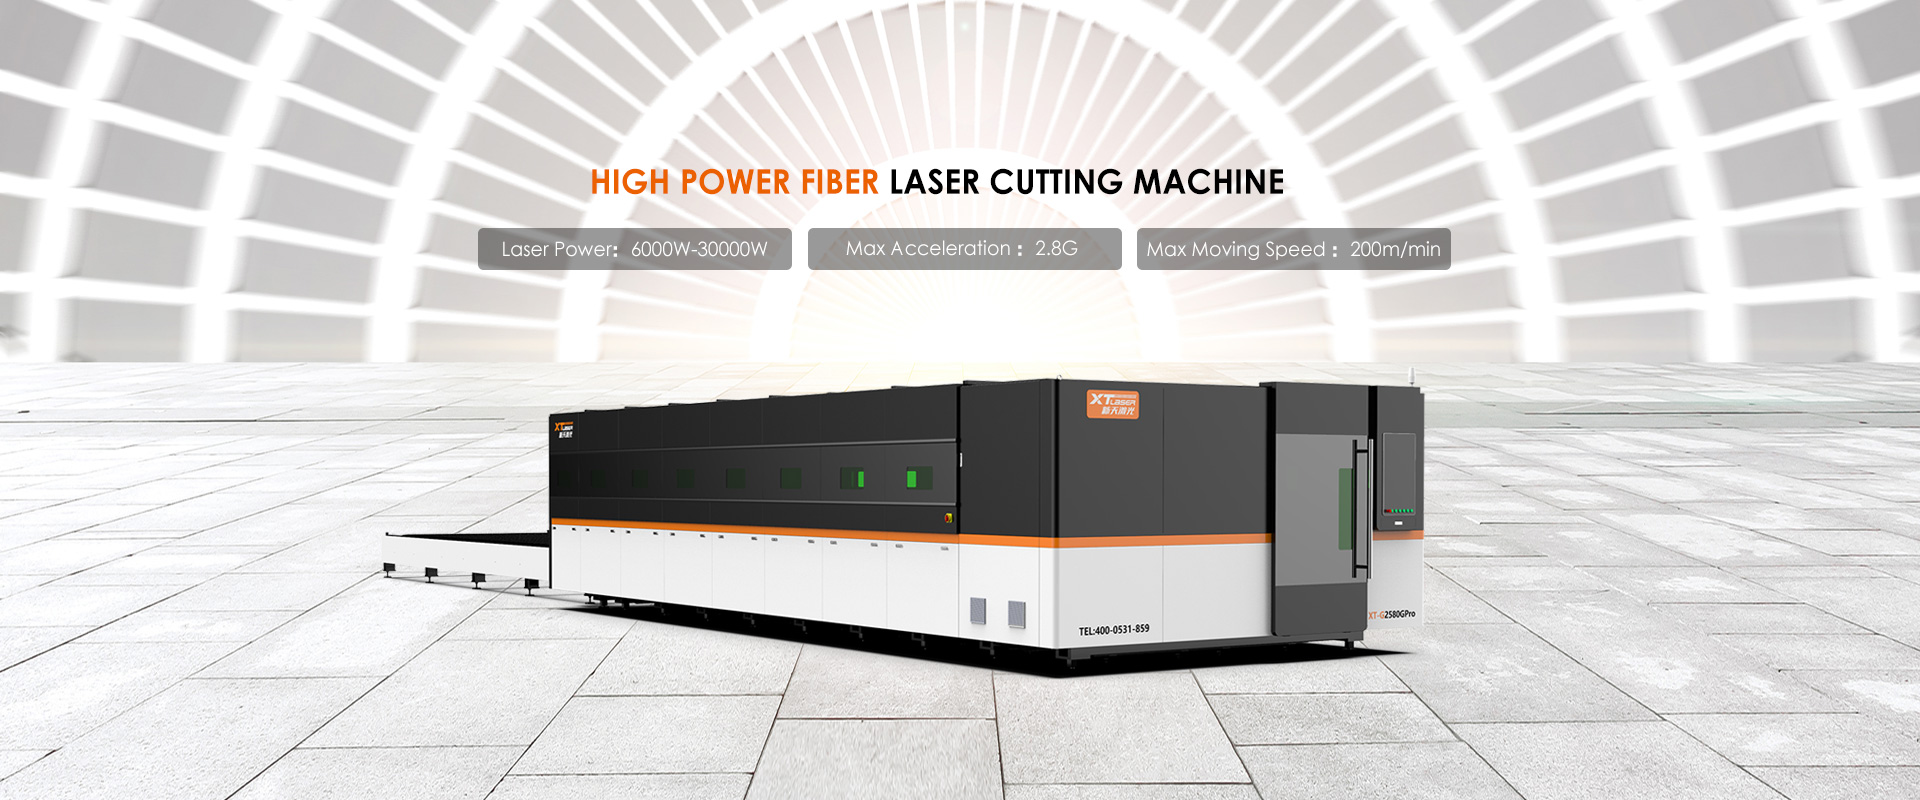 Fabbrica di macchine per taglio laser in fibra ad alta potenza